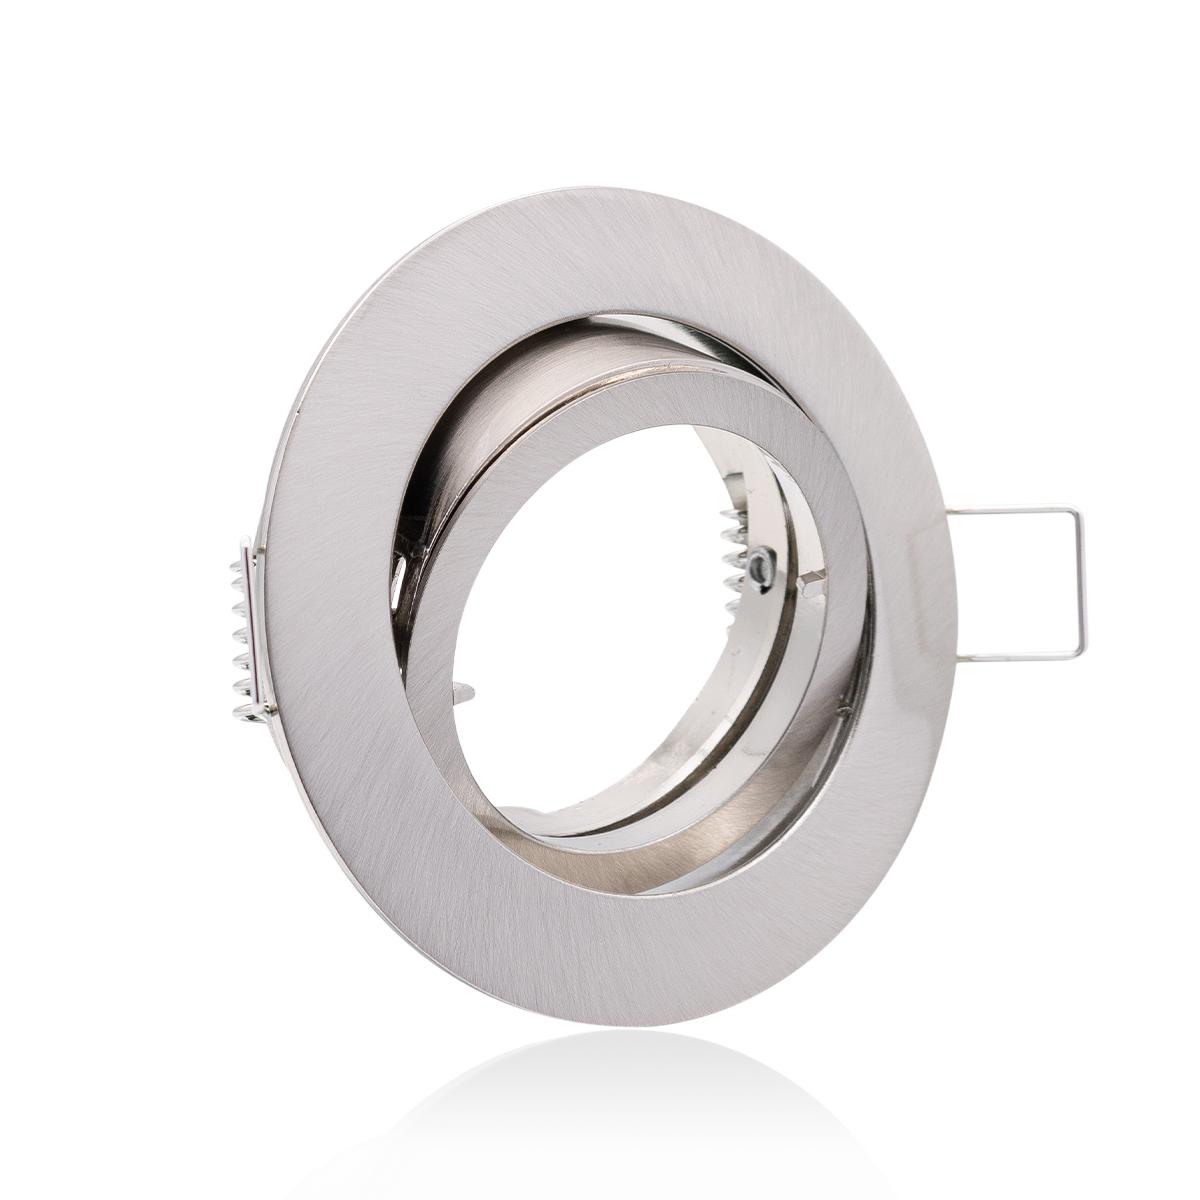 Einbaustrahler Rahmen rund Silber-gebürstet schwenkbar Ring Decken Spot Bajonettverschluss